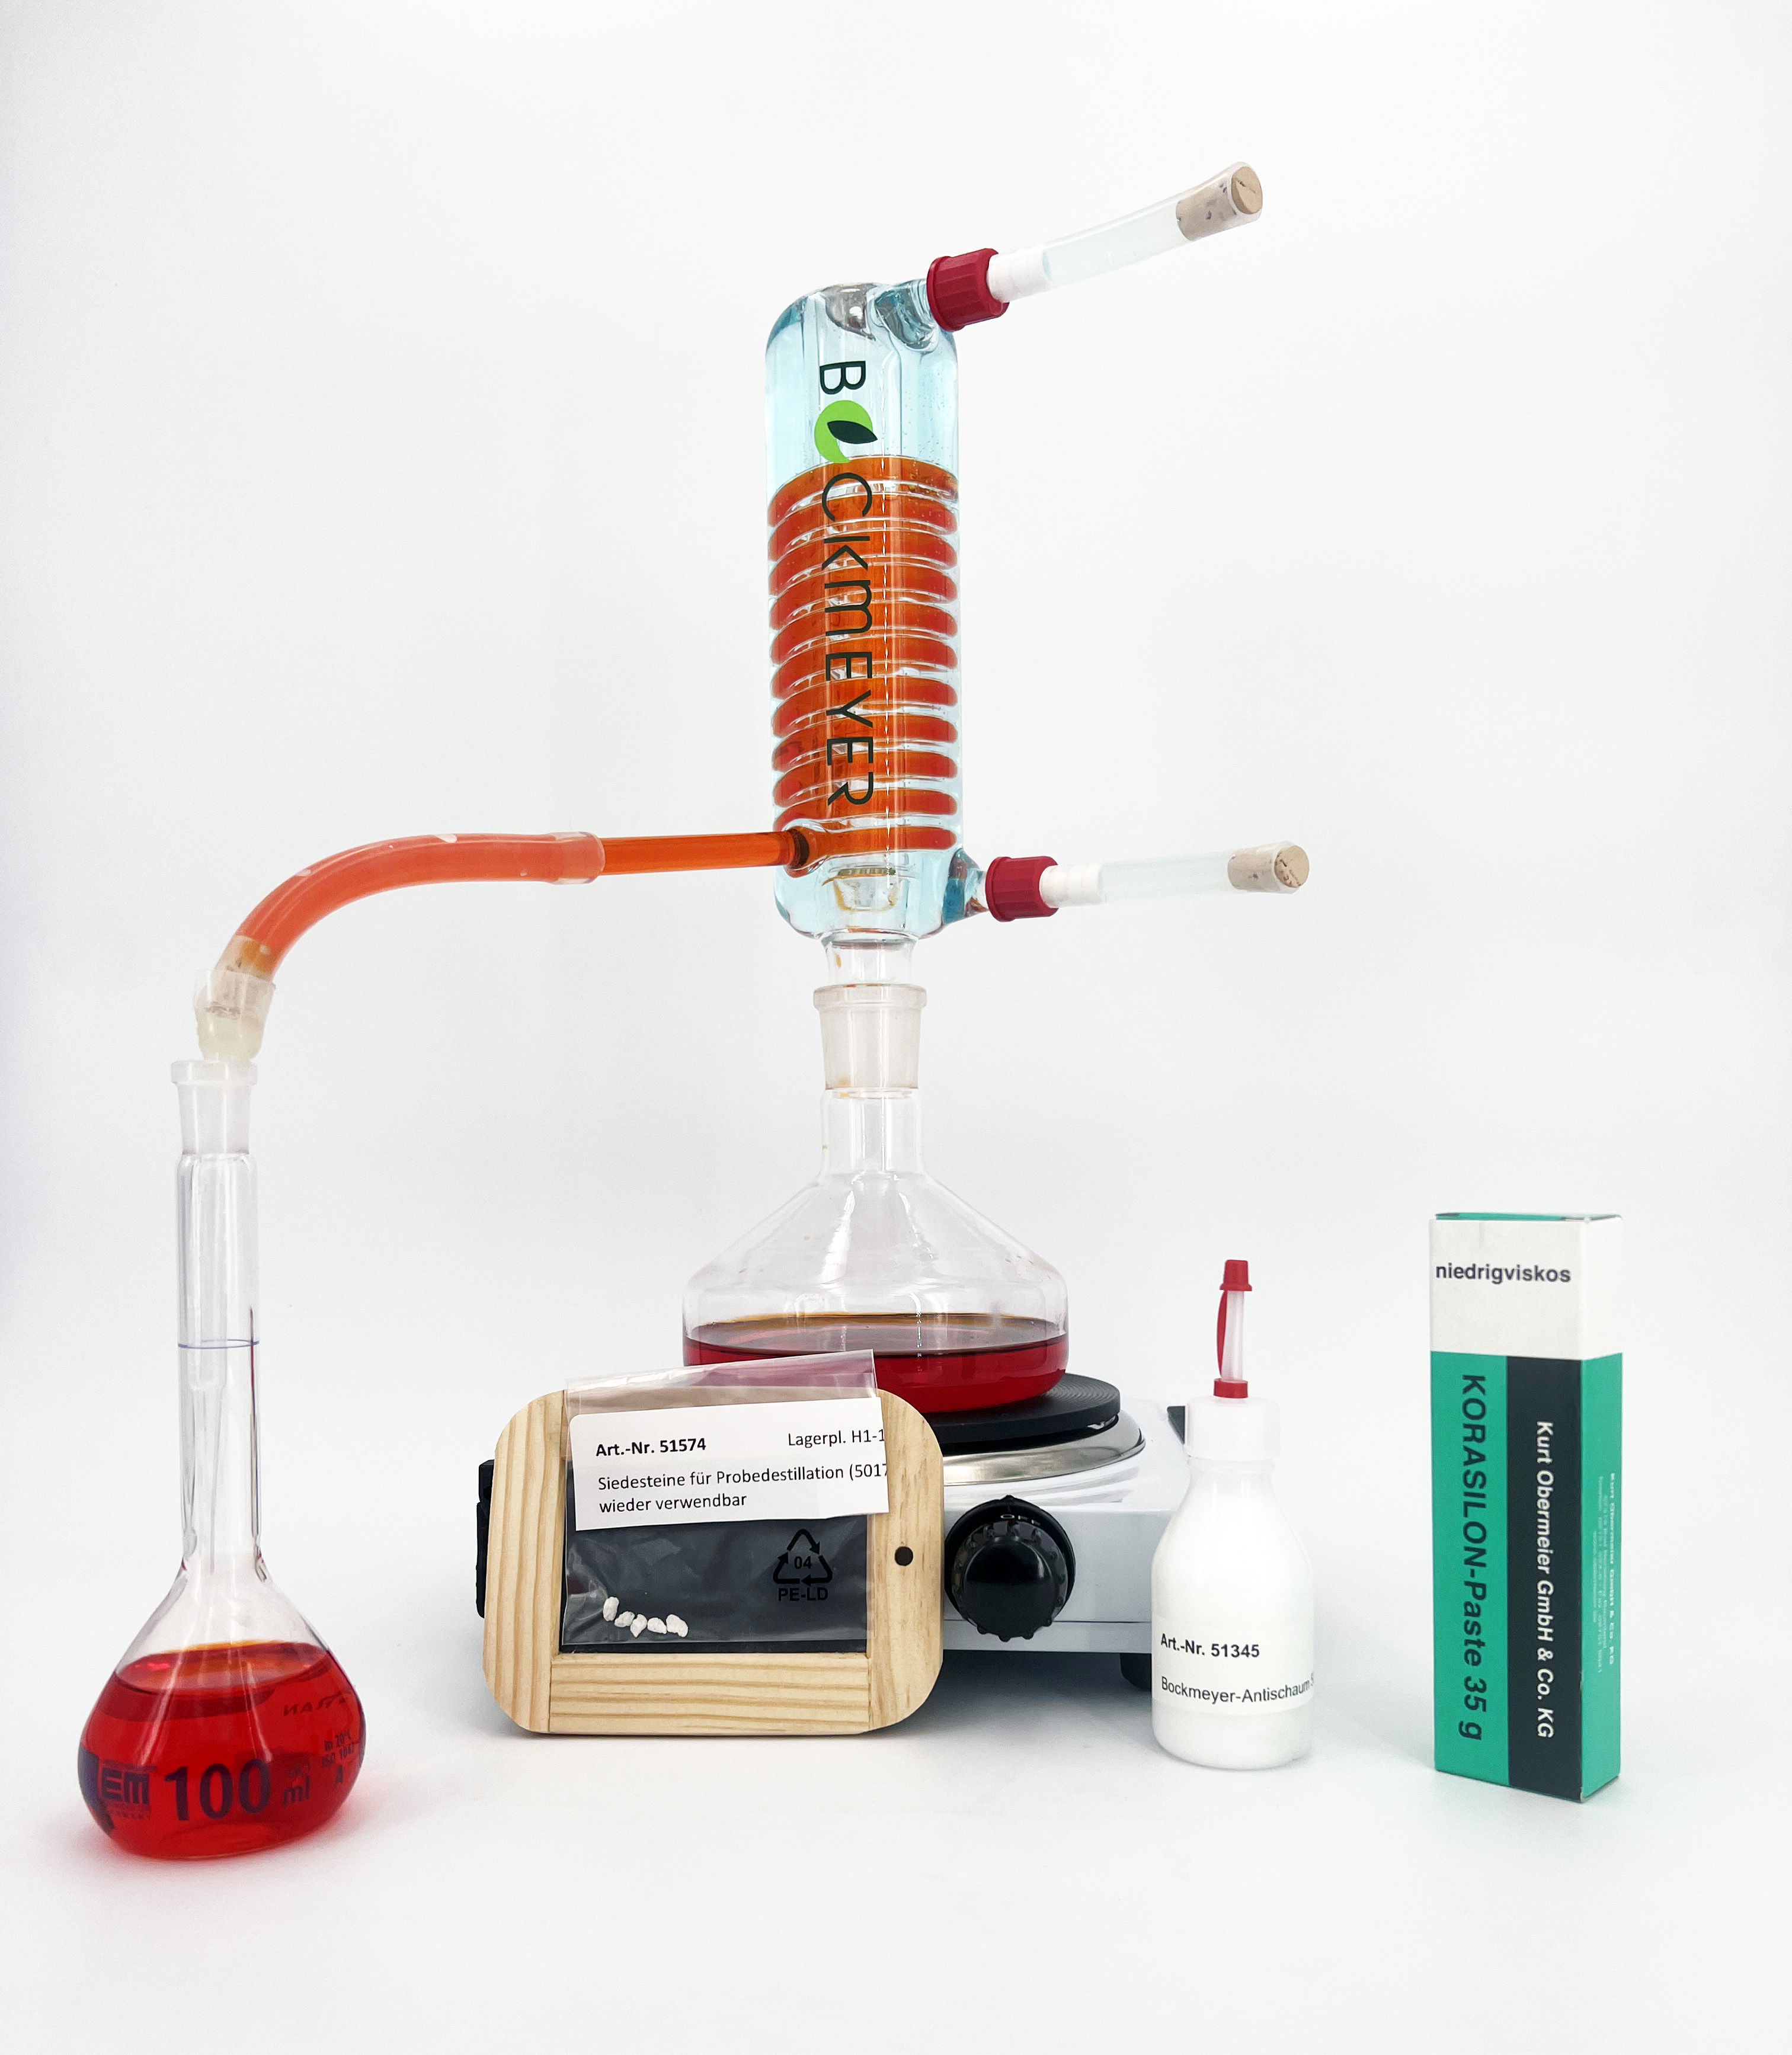 Bockmeyer Probedestillationsapparatur zur Alkoholbestimmung (ohne Herdplatte)